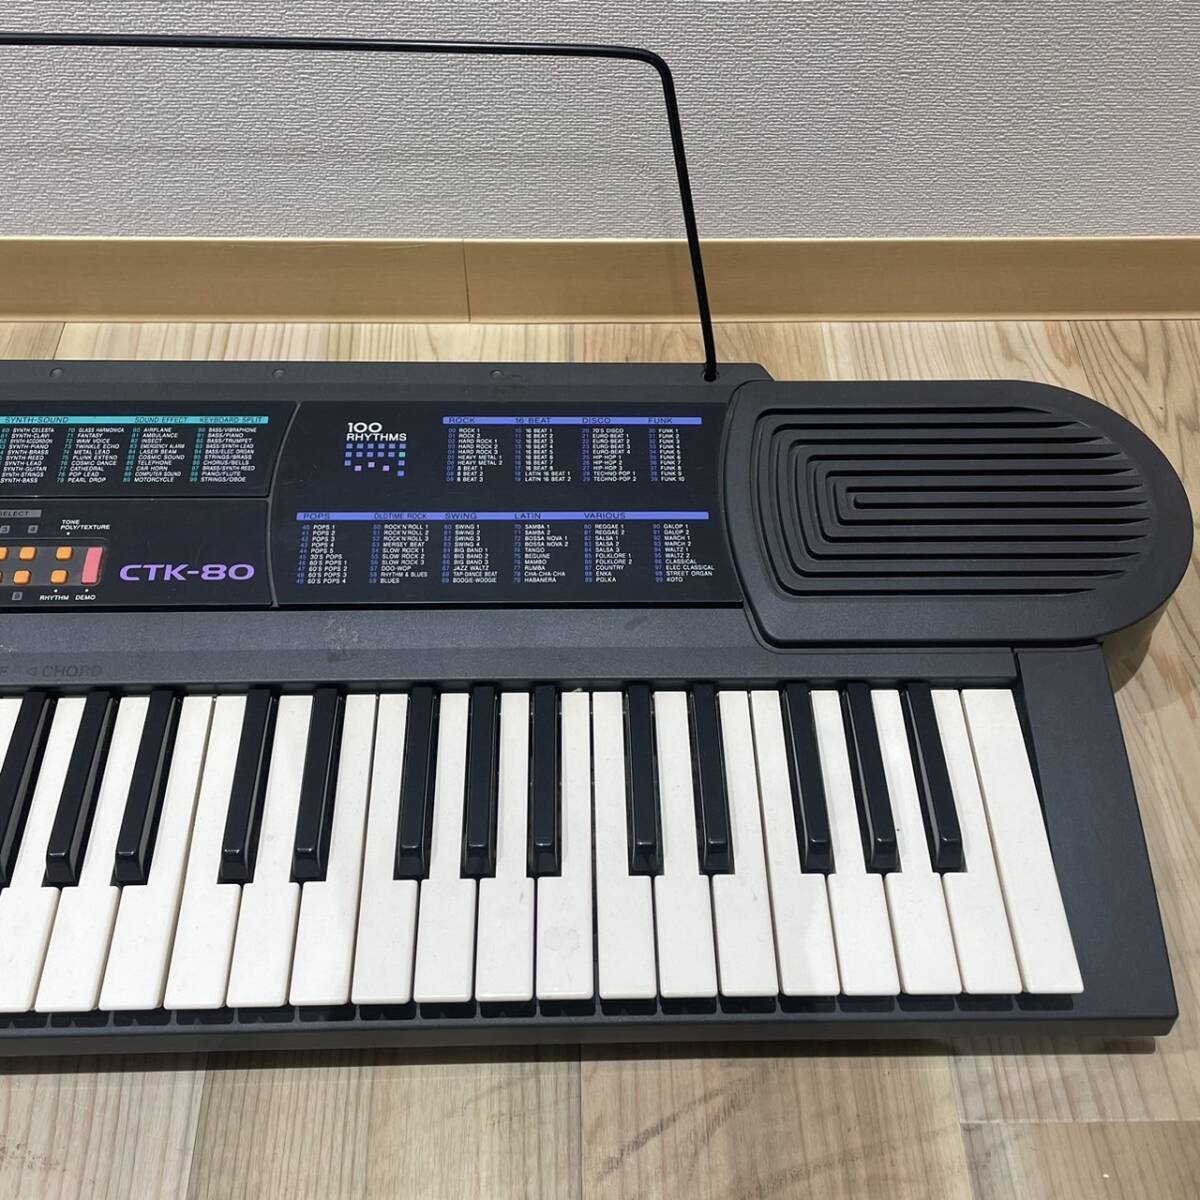 [AMT-10069]CASIO Casio электронный клавиатура CTK-80 электронное пианино клавишные инструменты 49 клавиатура электронное пианино черный 100 ритм музыка музыкальные инструменты утиль искривление 